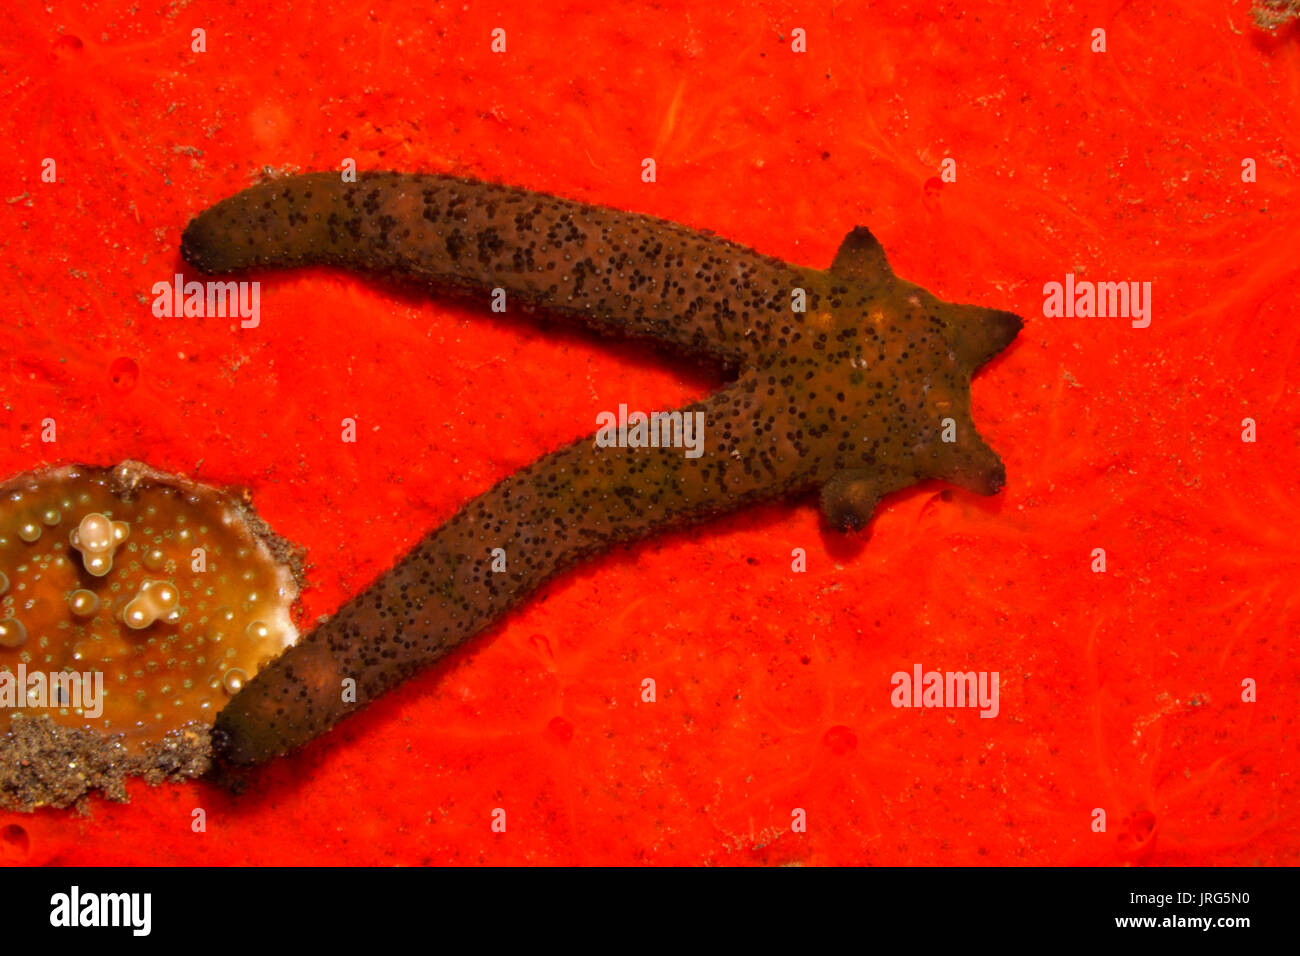 Regenerierende Luzon Sea Star Echinaster luzonicus, zeigt vier arm Regeneration von zwei 'übergeordneten' Arme wachsen. Siehe unten für mehr Informationen Stockfoto